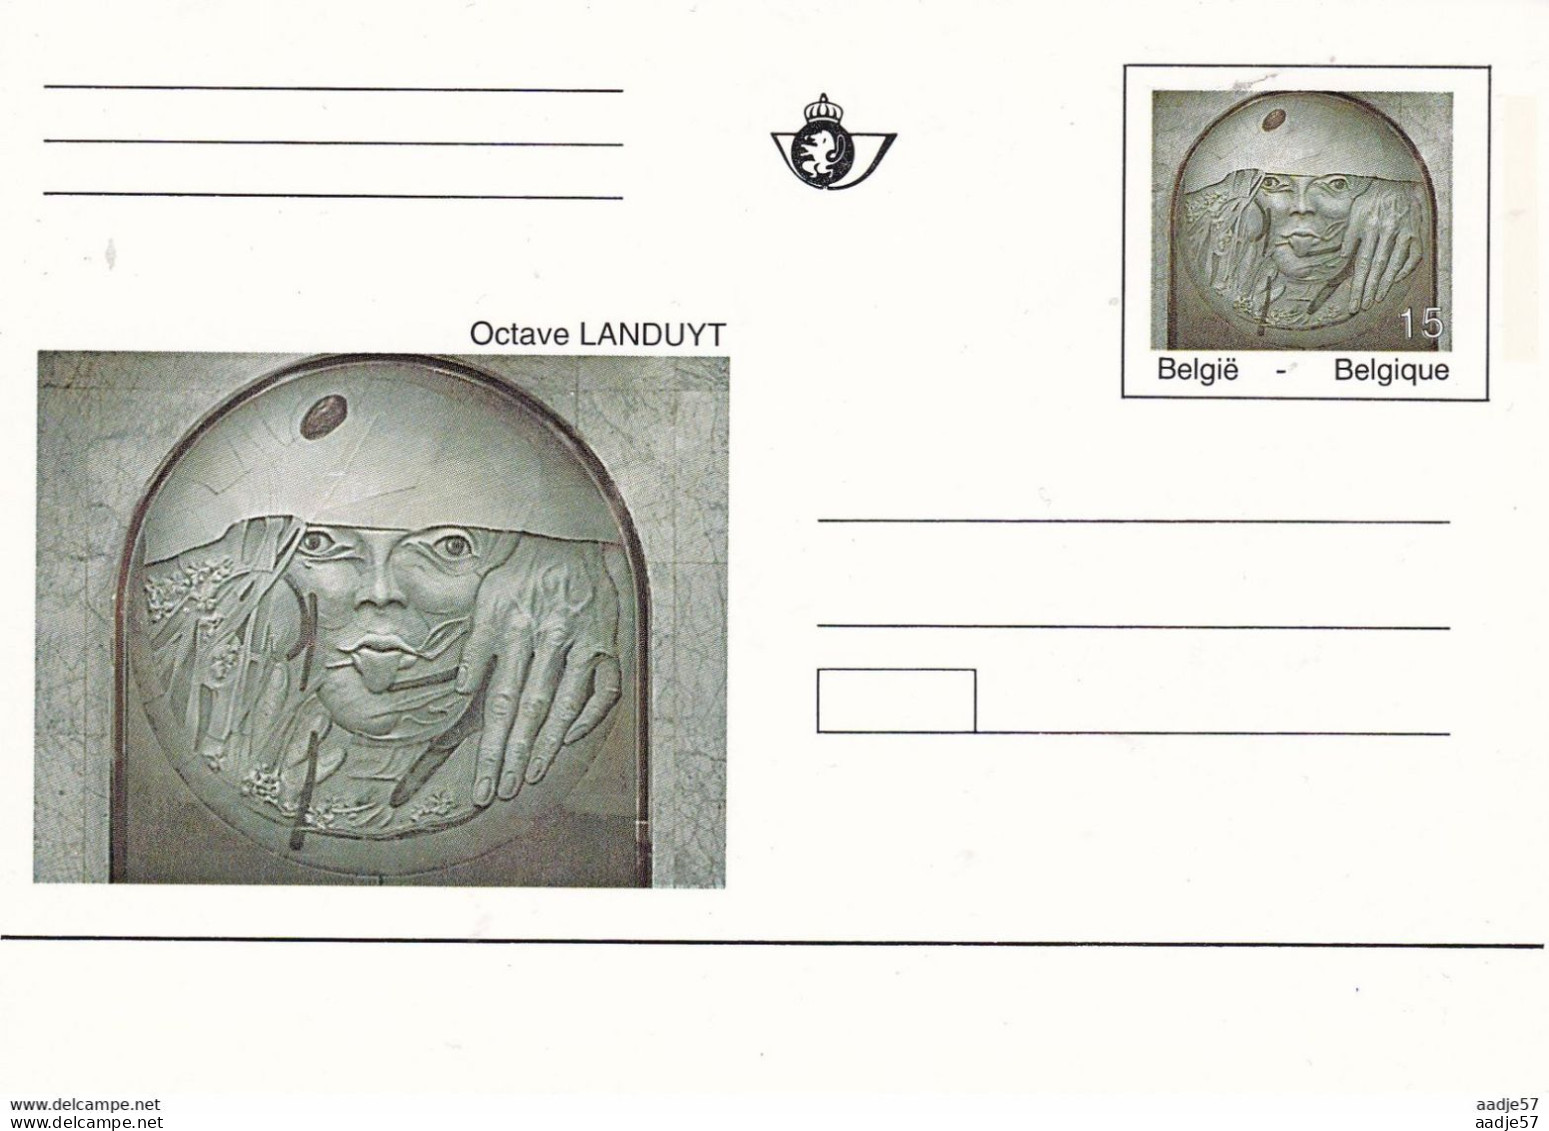 BE 19931016; Art Dans Le Métro à Bx, Oscar Landuyt; Carte Postale - Cartes Postales 1951-..